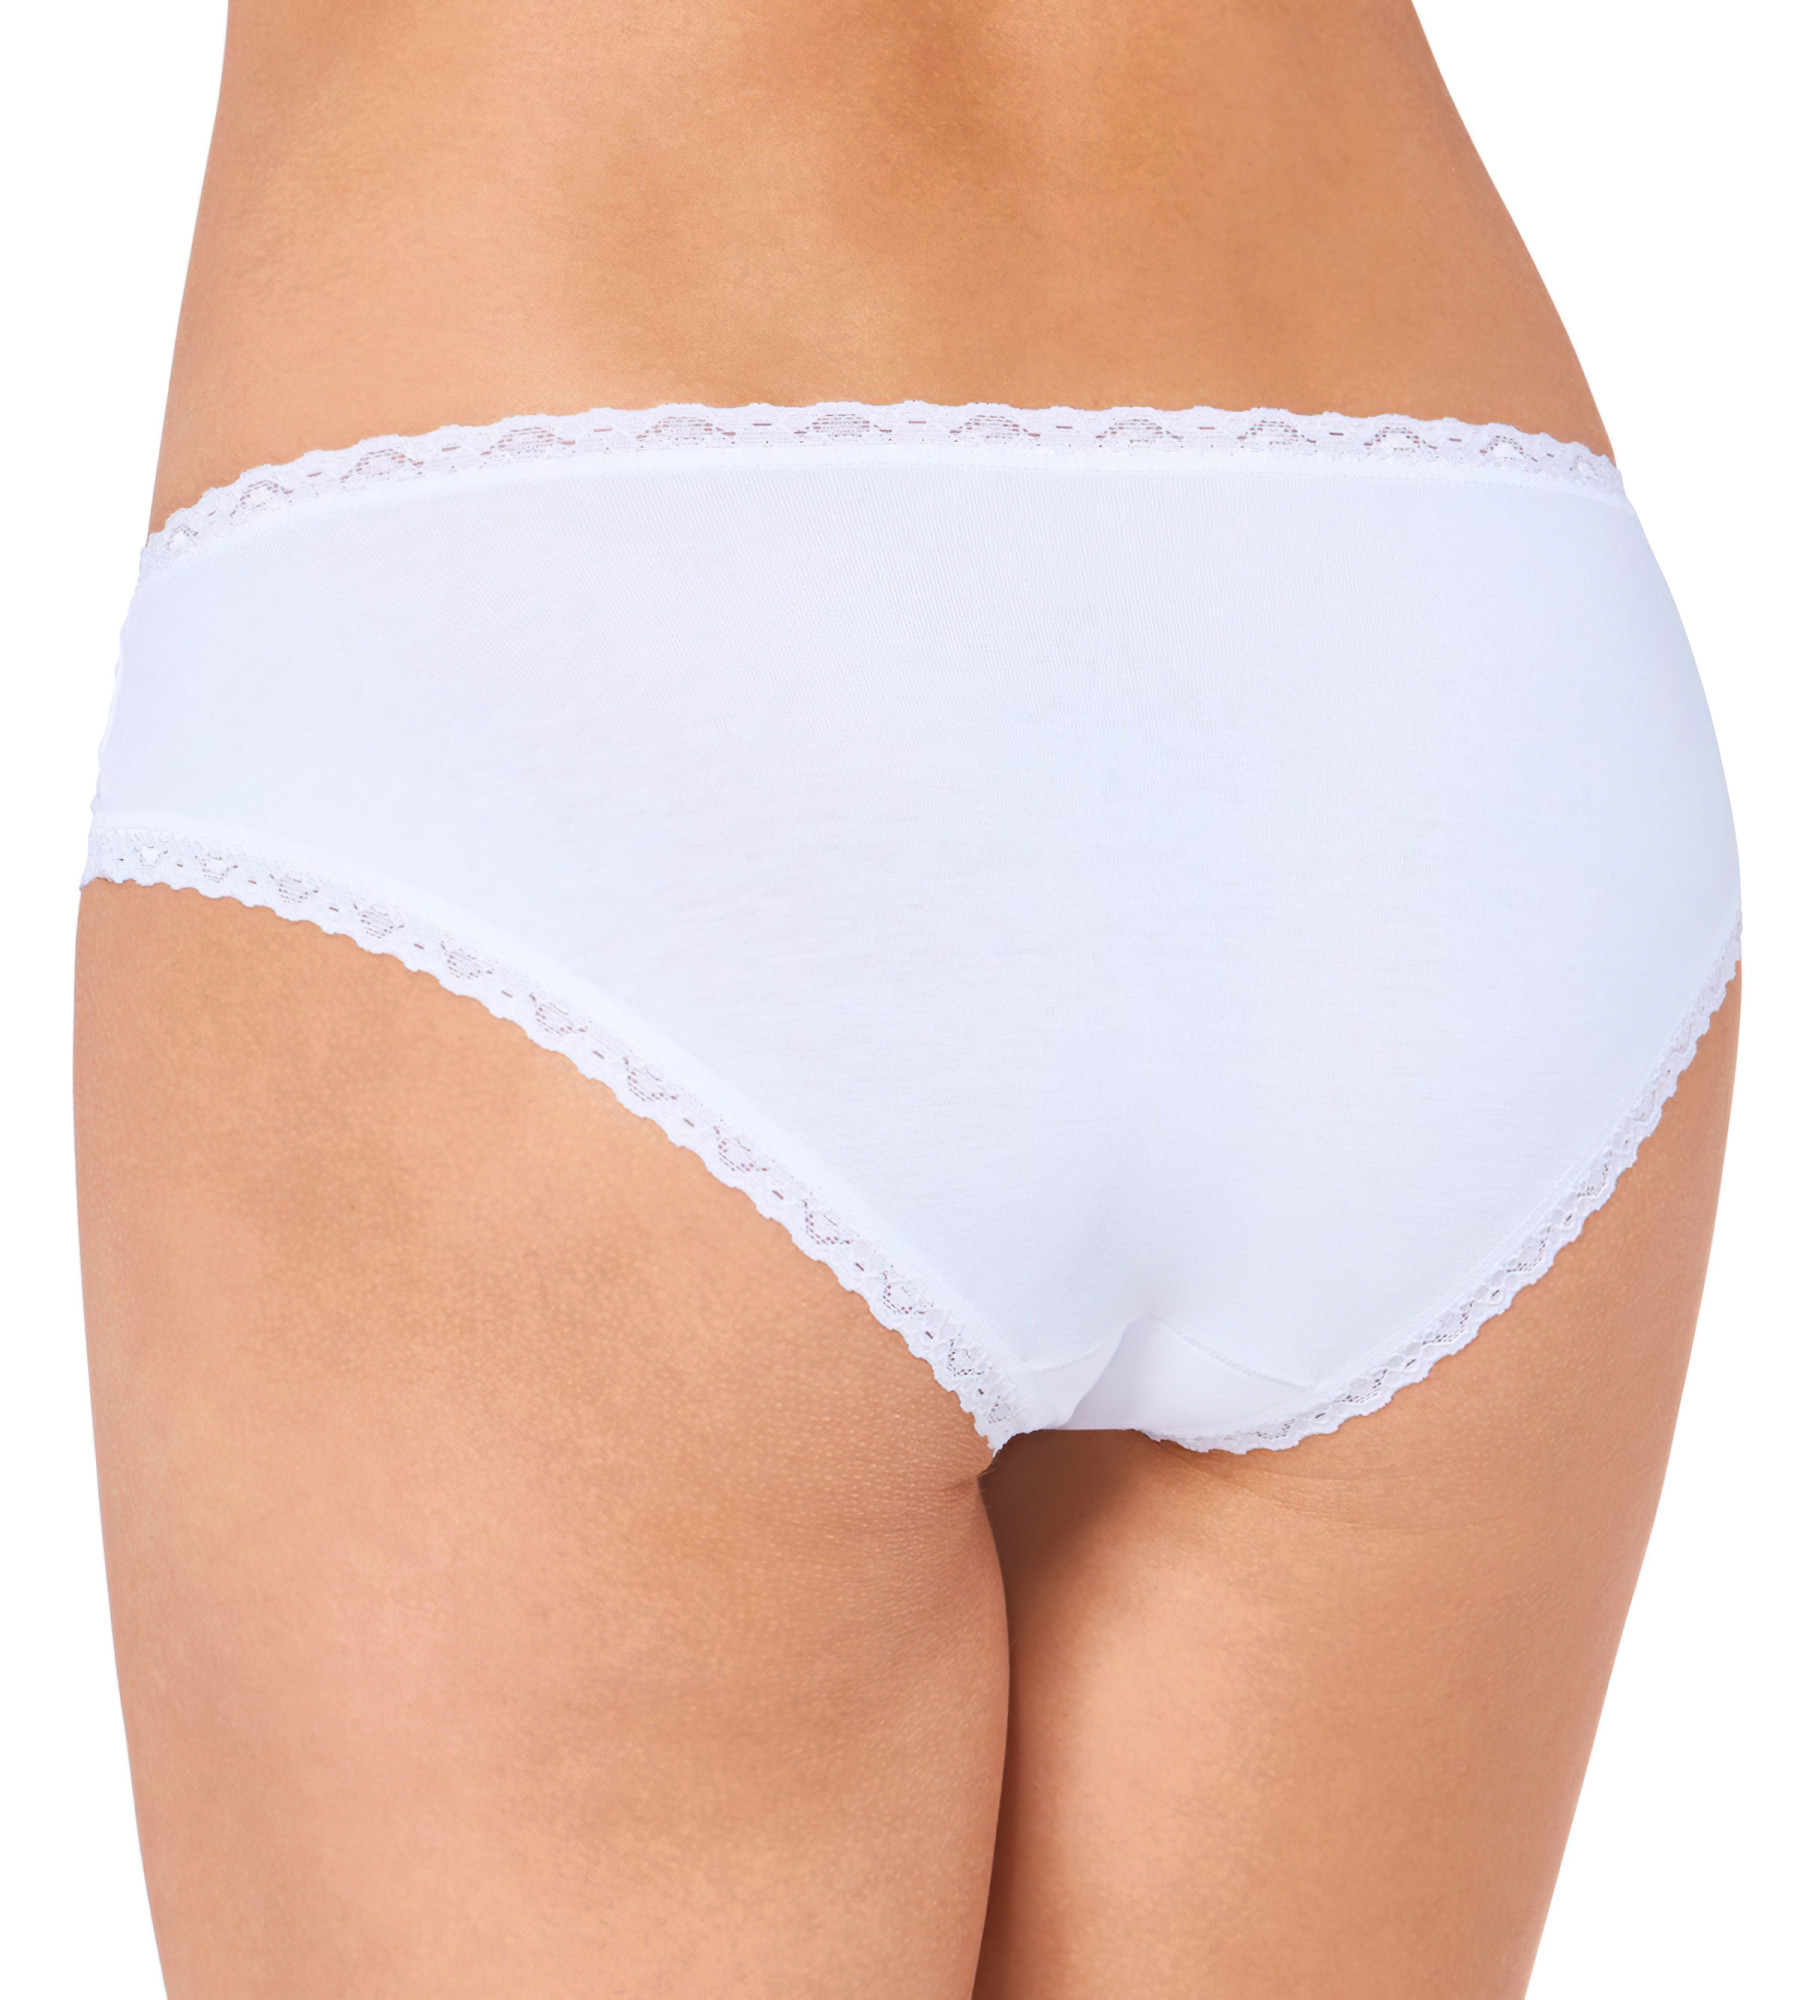 Kalhotky 24/7 Cotton Lace Hipster bílé - Sloggi bílá (0003) 036